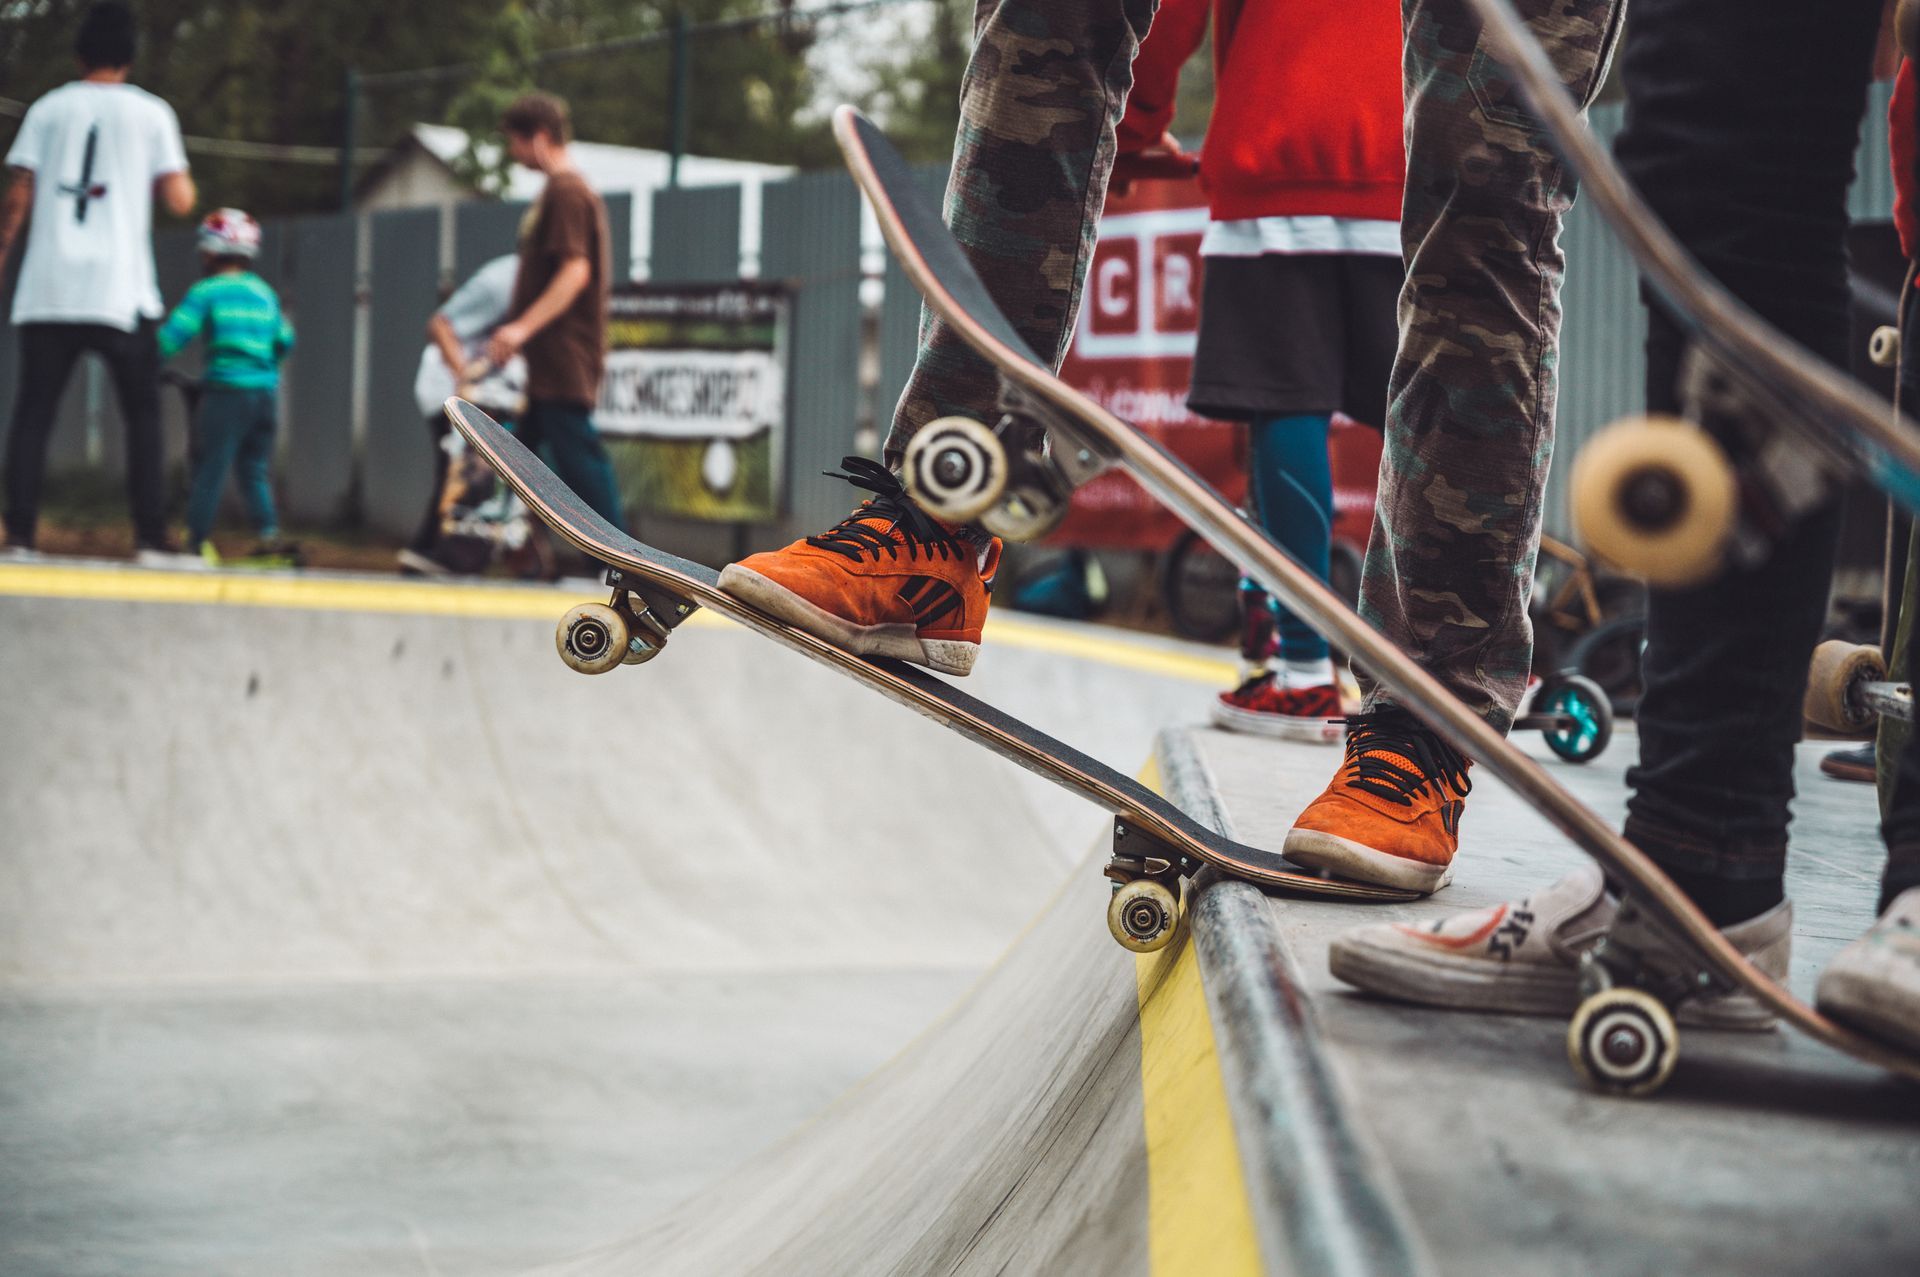 Skateboarders prepare to drop in on a small, concrete mini ramp.